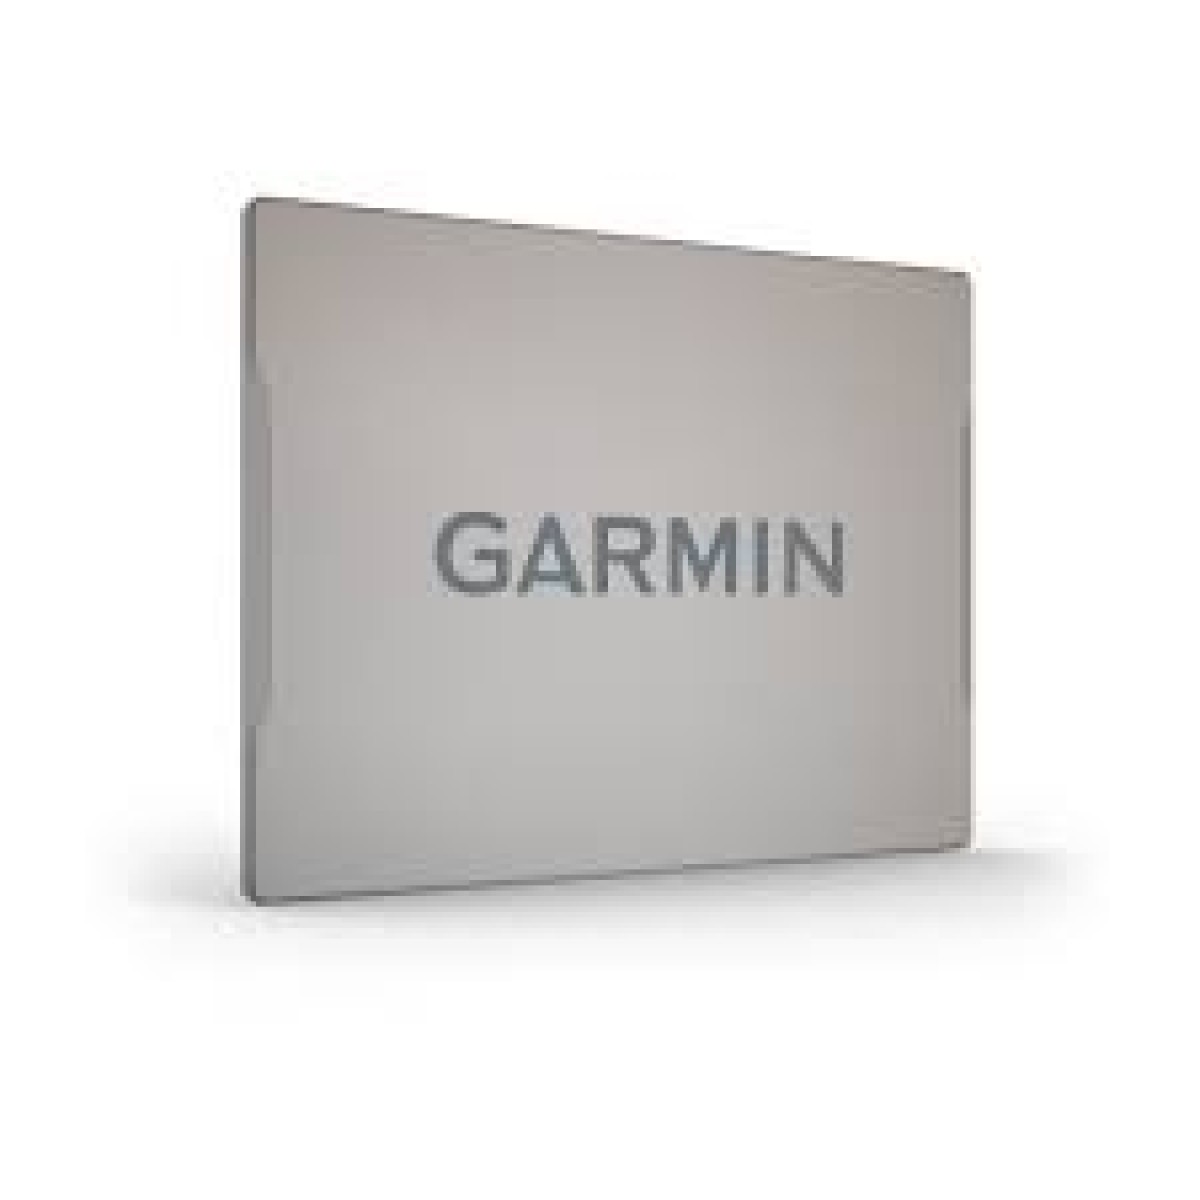 GARMIN Sun Cover, Plastic, GPSMAP 8x16